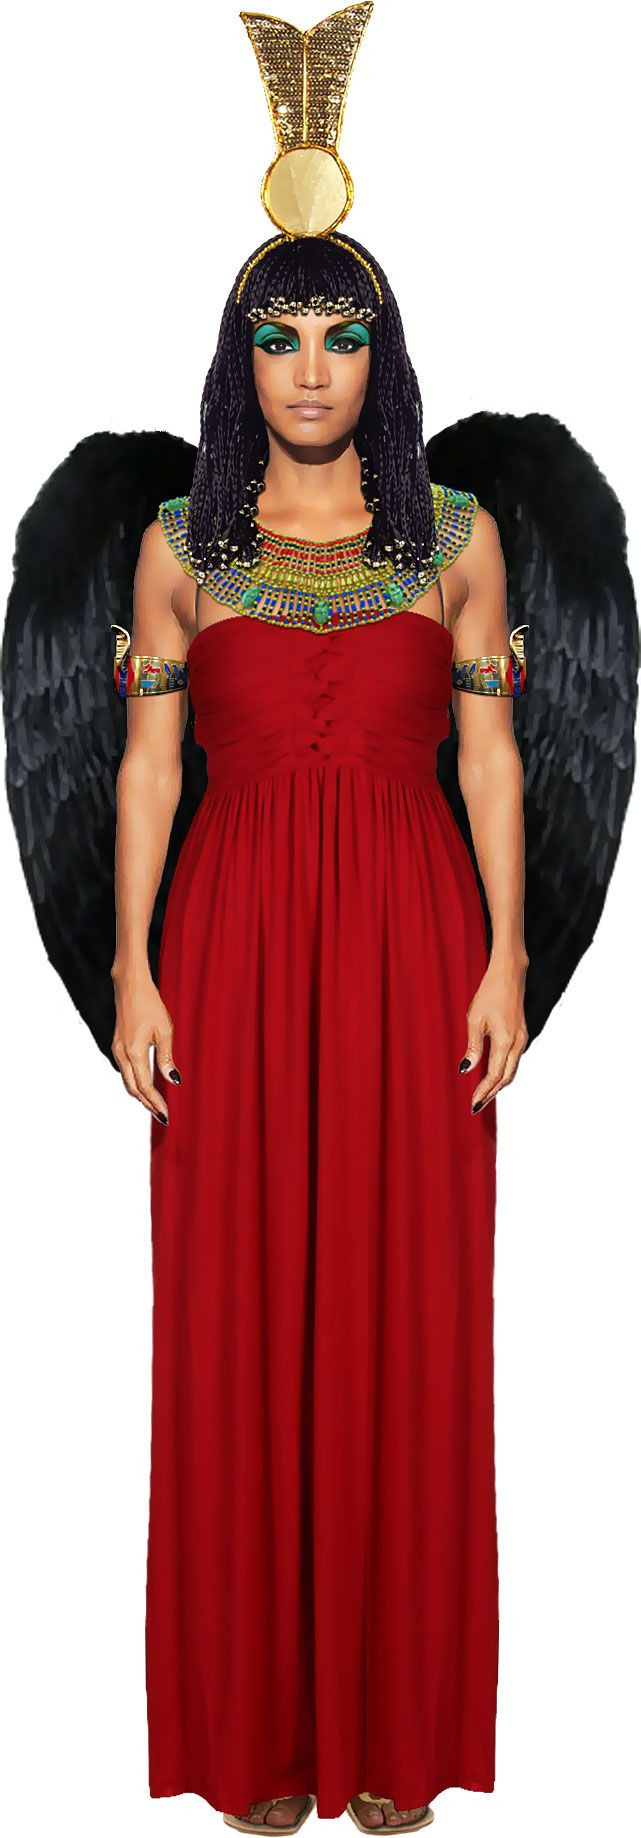 DIY Egyptian Goddess Costume
 28 best Goddess costumes images on Pinterest